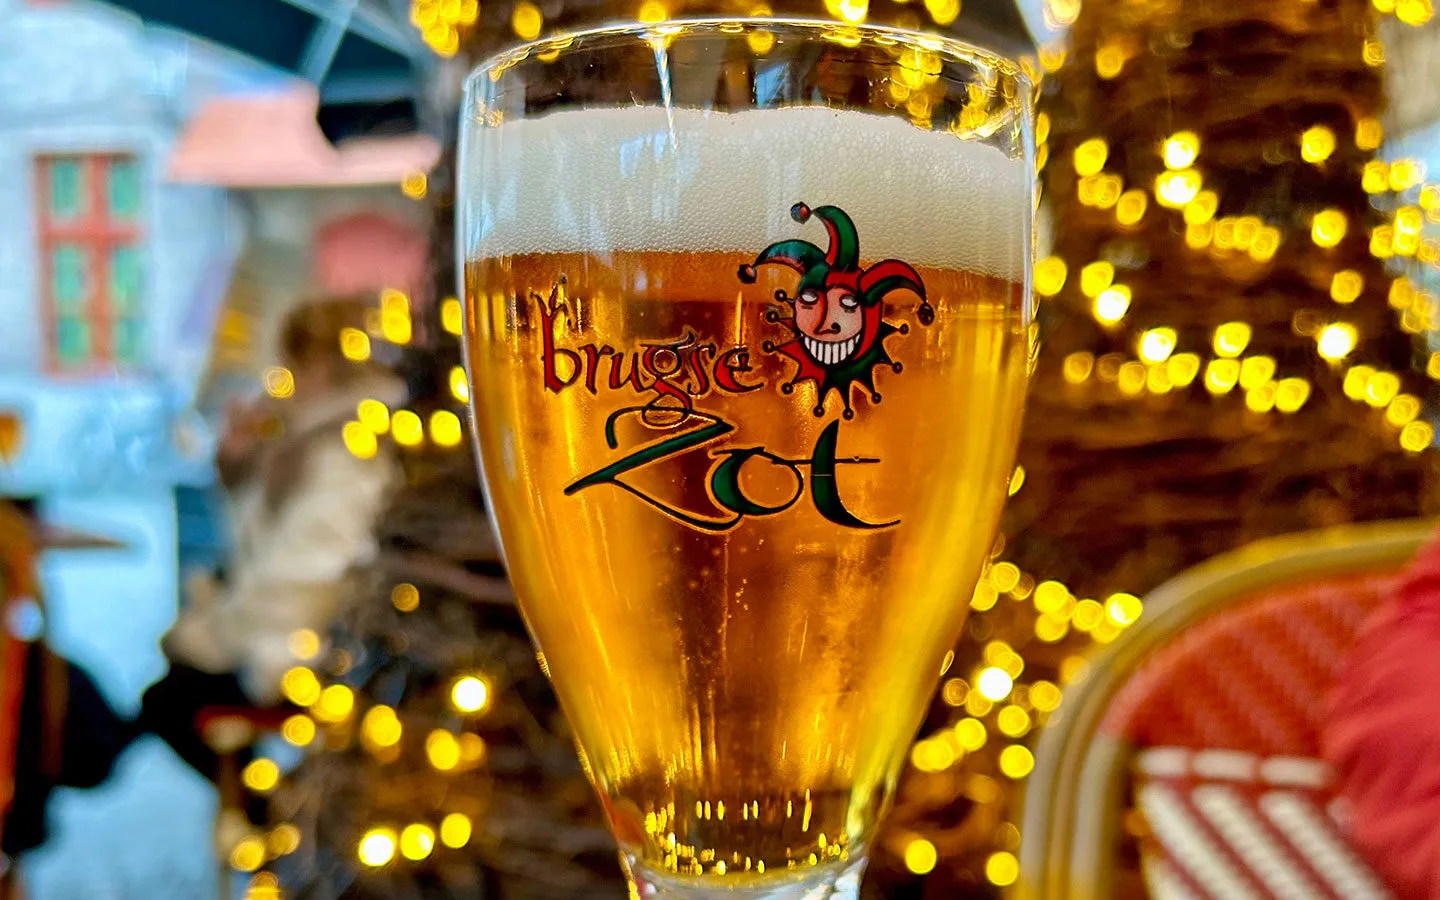 Brugse Zot beer from De Halve Maan brewery in Bruges